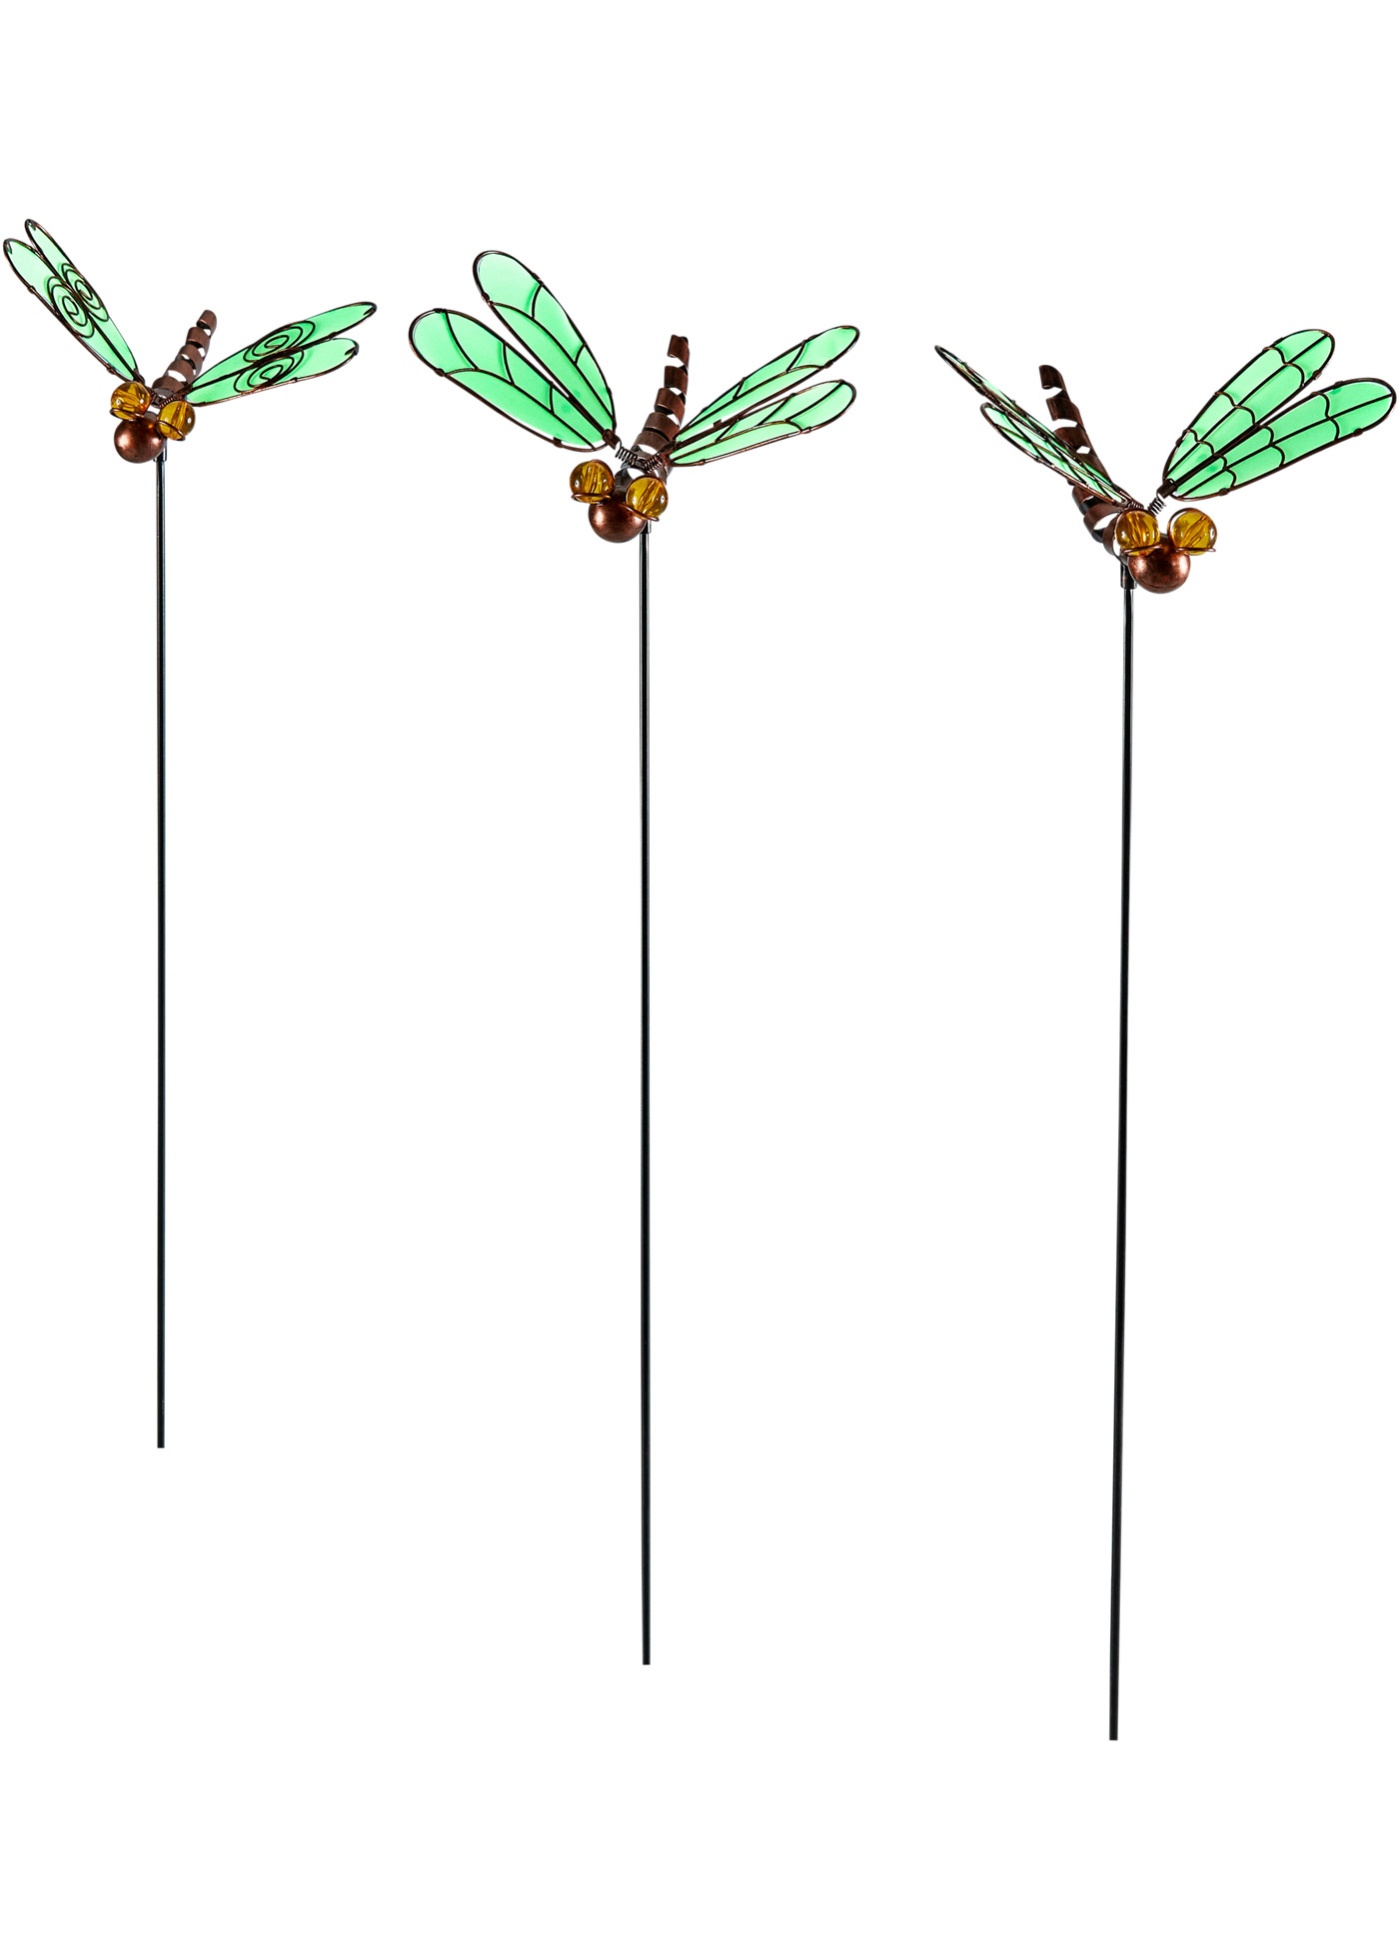 Záhradná napichovačka vážka so svetelnými krídlami (3 ks v balení)